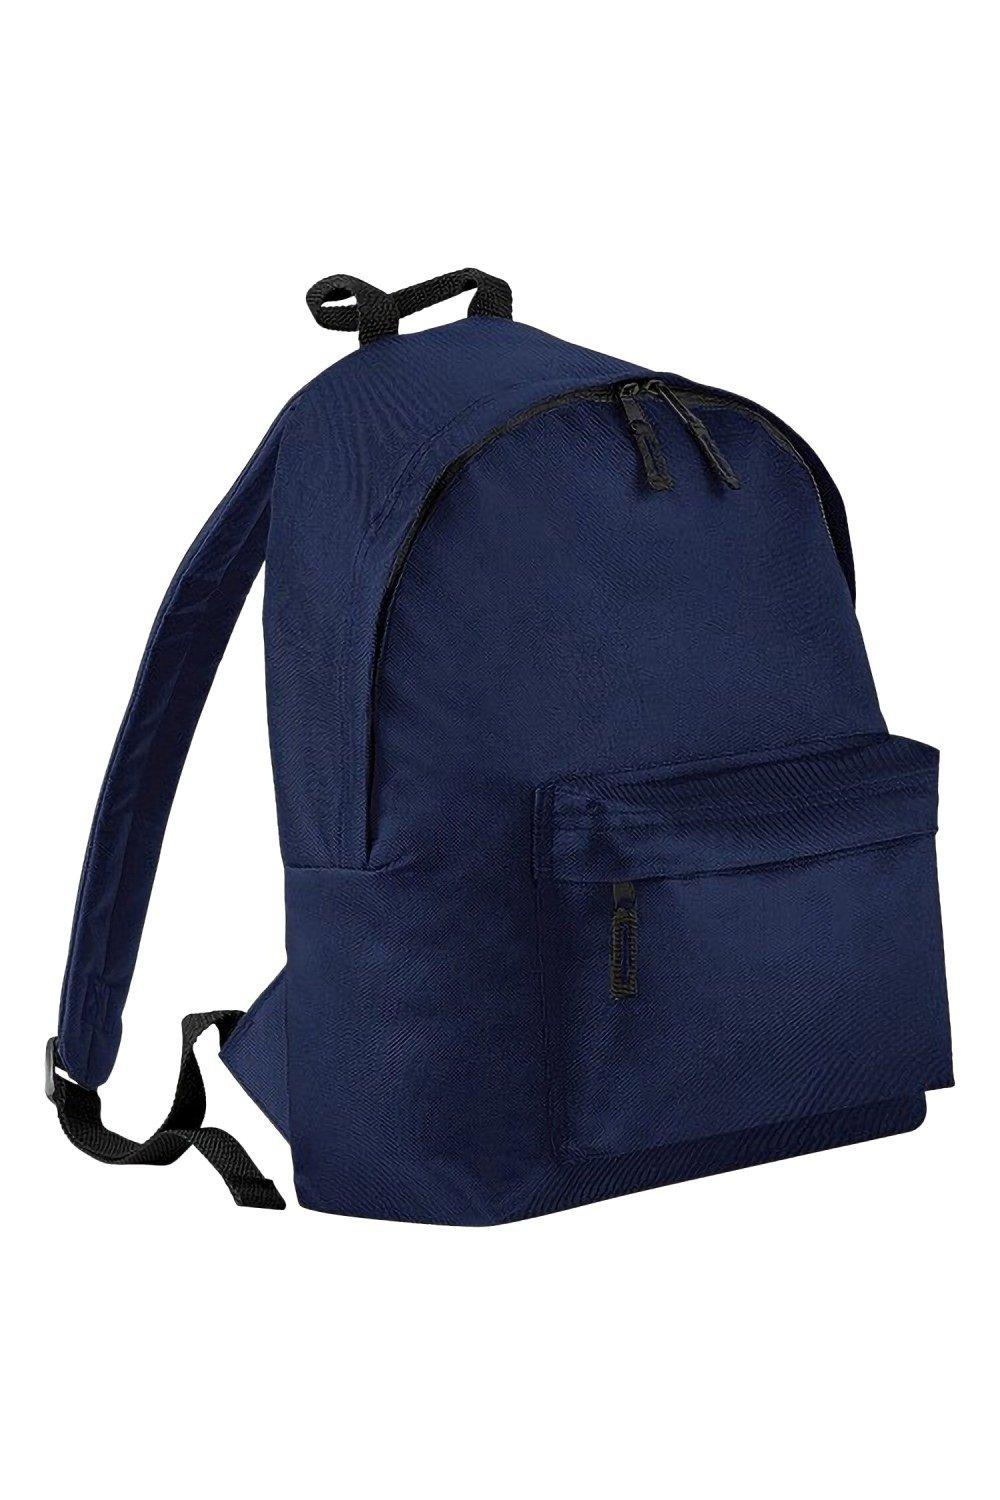 Модный рюкзак / рюкзак (14 литров) (2 шт. в упаковке) Bagbase, темно-синий trixie купалка для хомяков и мышей дерево 22 х 12 х 12 см 63004 0 325 кг 56348 1 шт